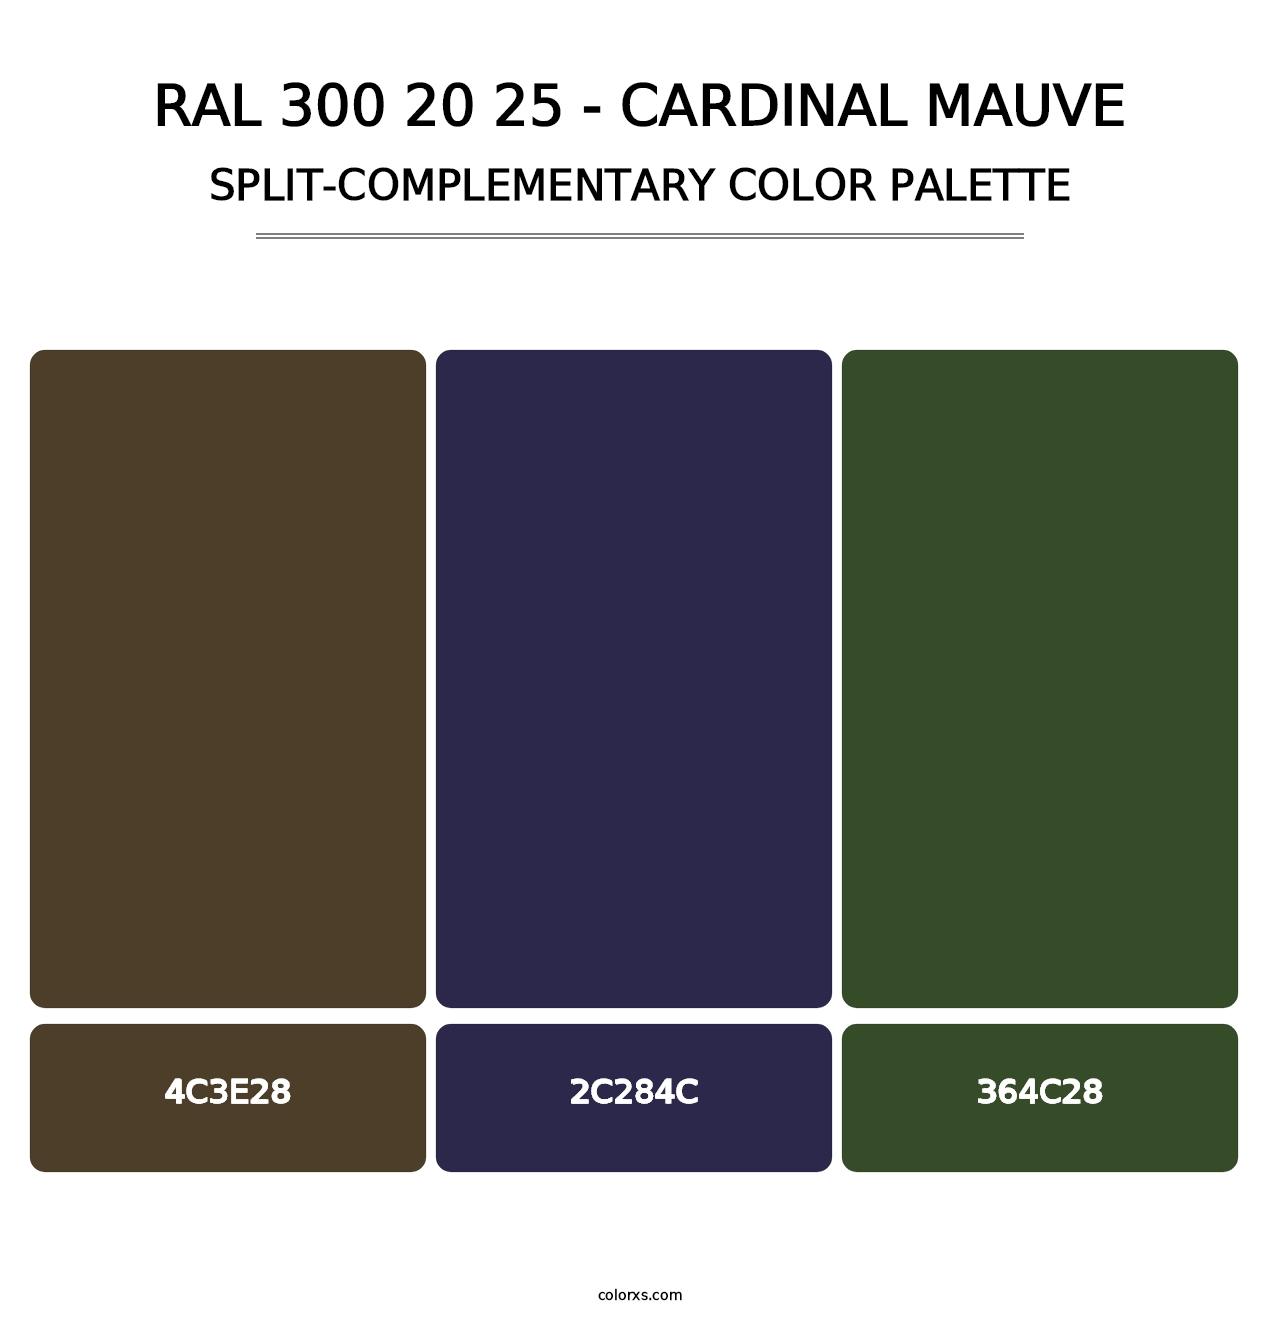 RAL 300 20 25 - Cardinal Mauve - Split-Complementary Color Palette